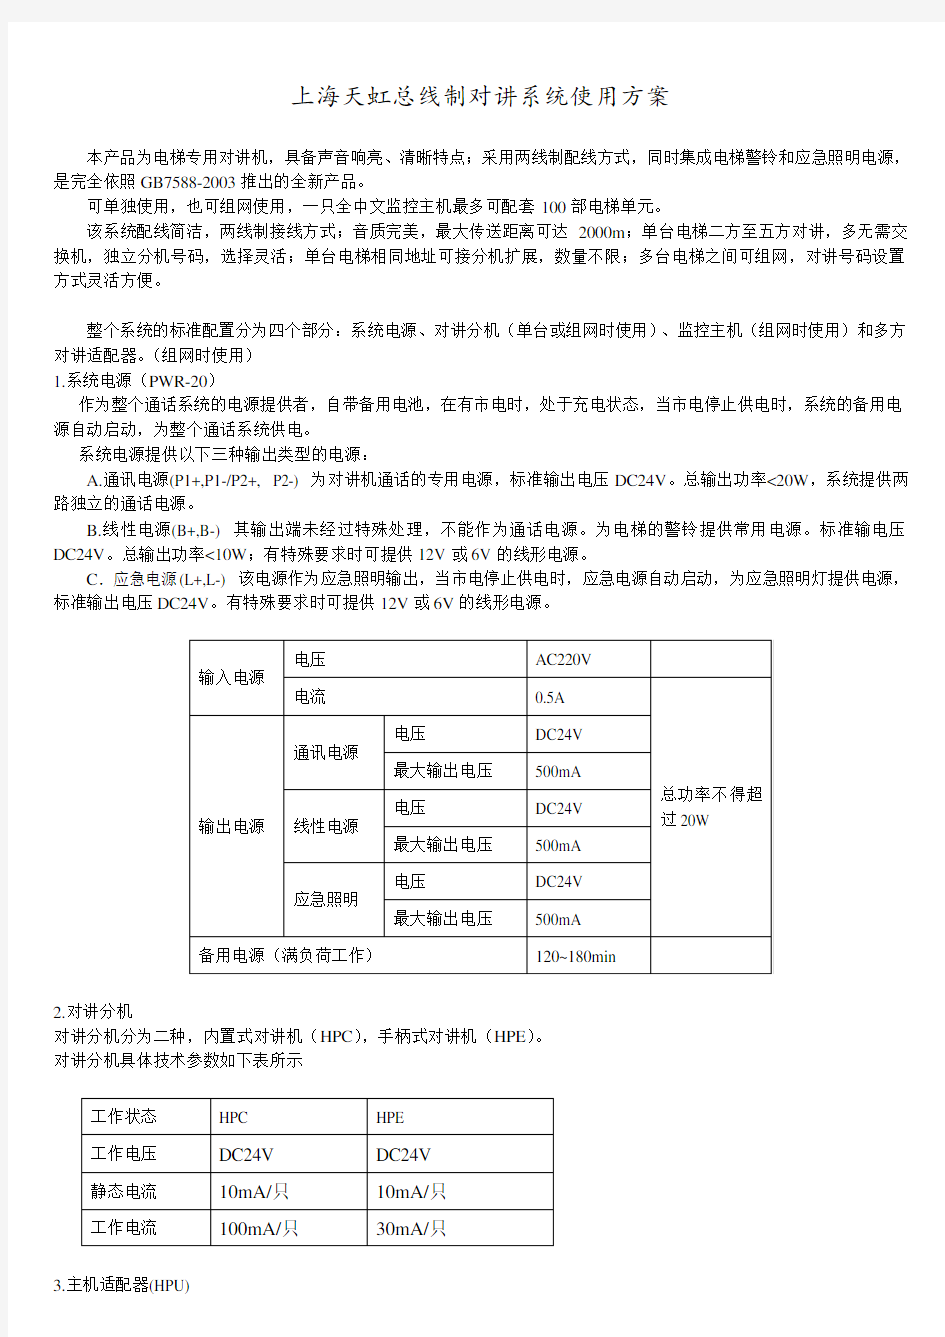 上海天虹总线制对讲系统使用方案